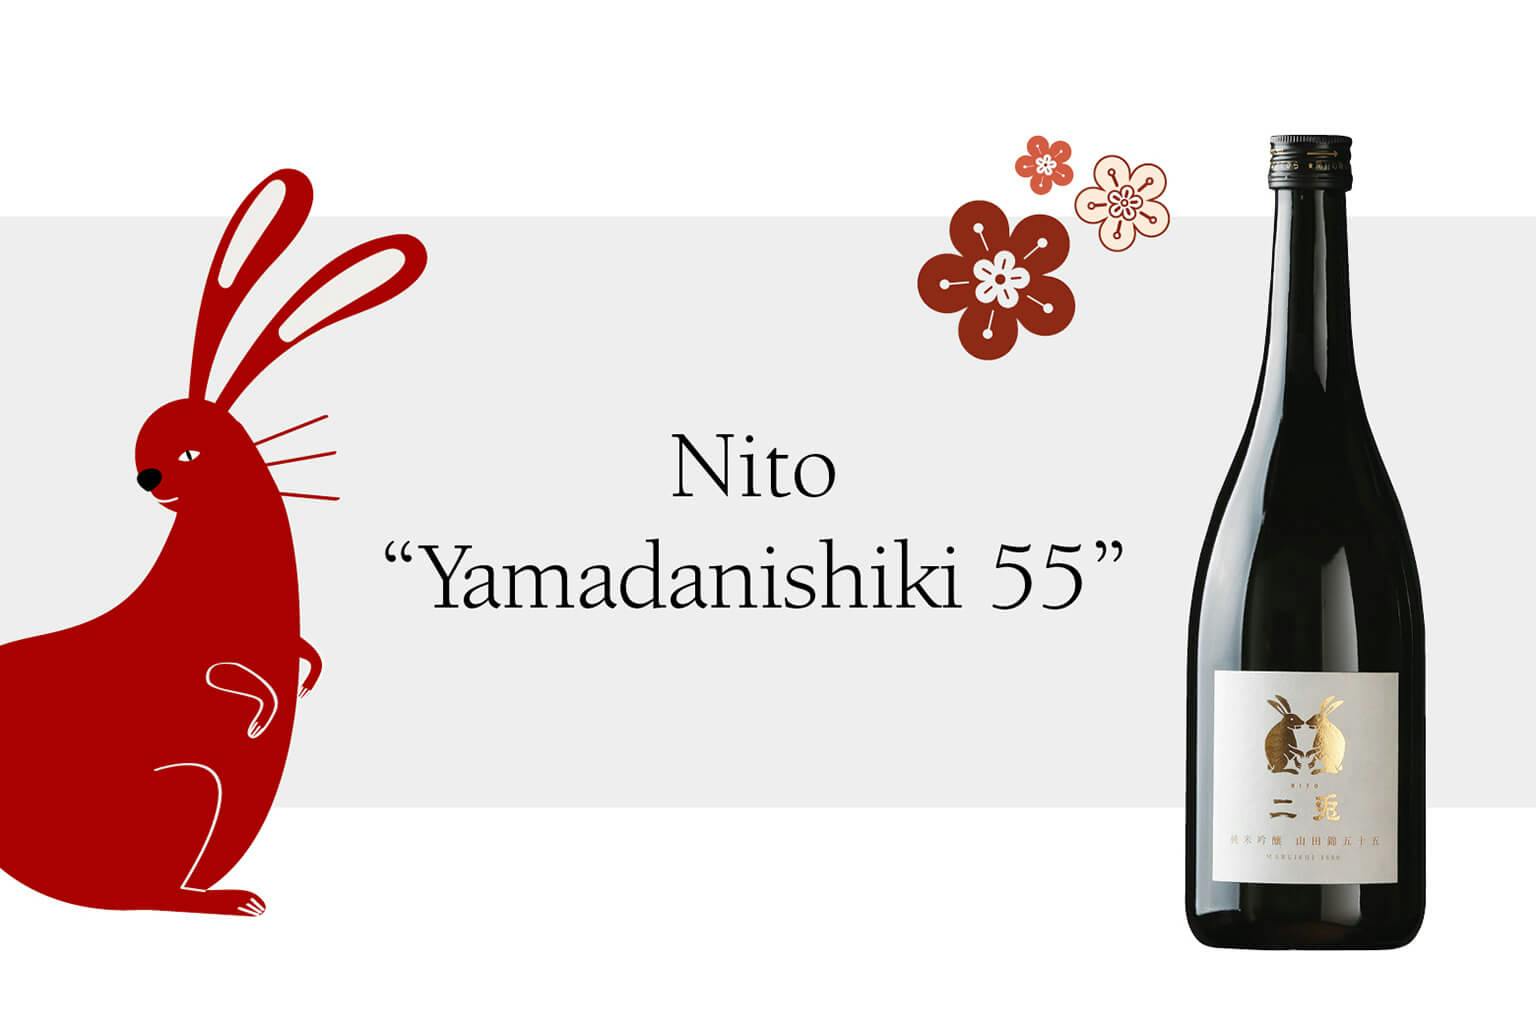 Nito “Yamadanishiki 55” with Chinese zodiac Rabbit